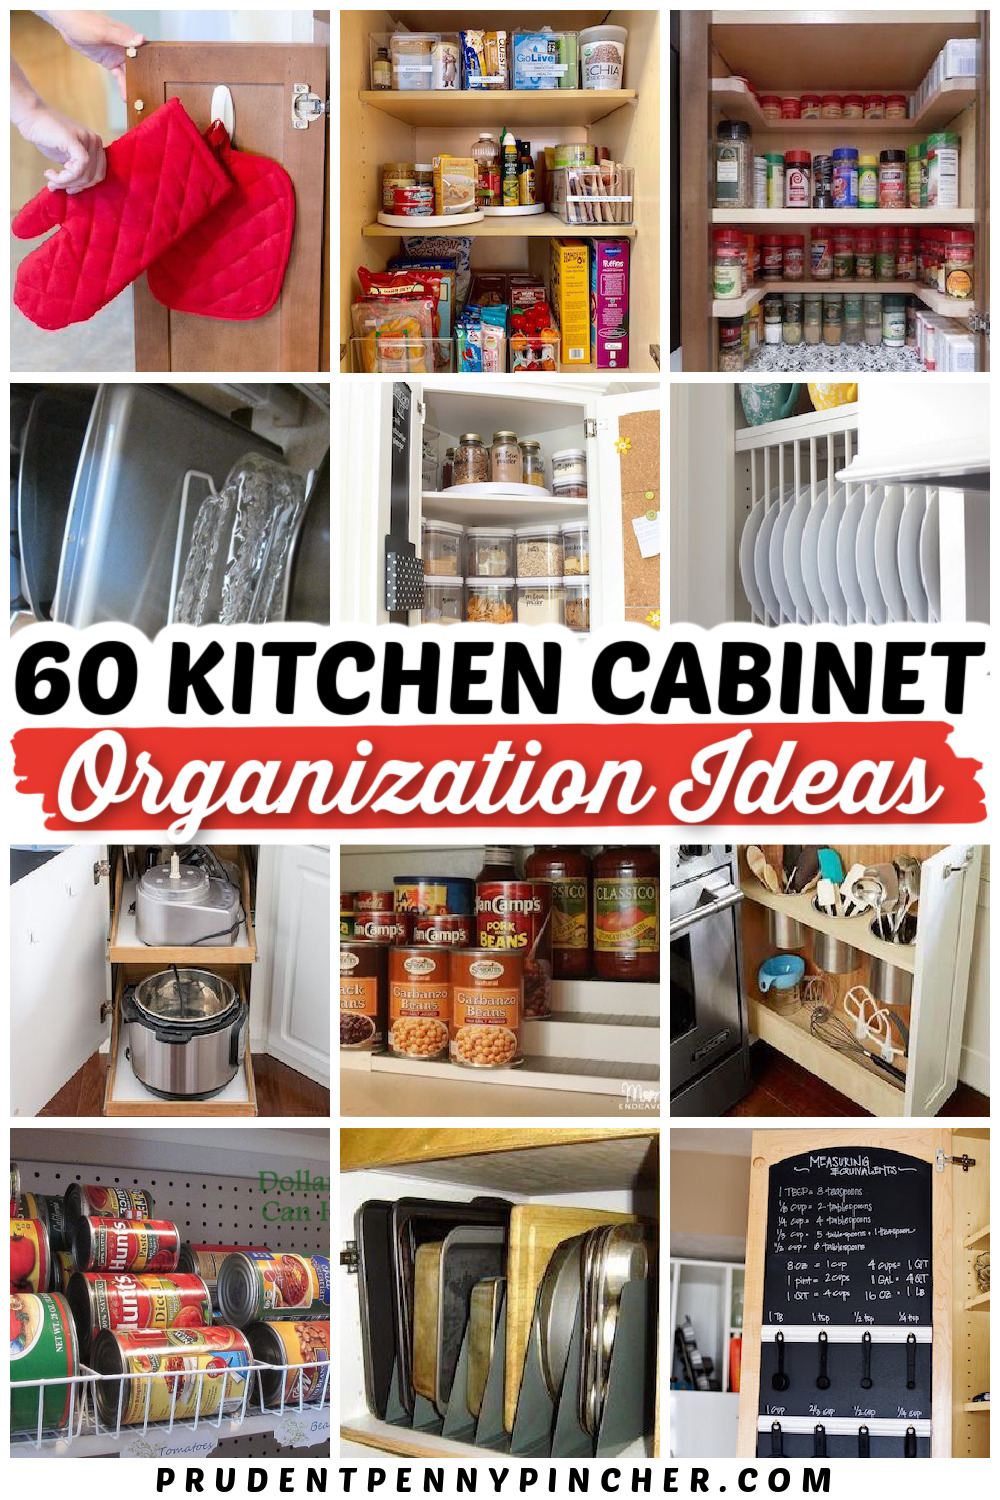 https://www.prudentpennypincher.com/wp-content/uploads/2021/01/kitchen-cabinet-organization-ideas.jpg